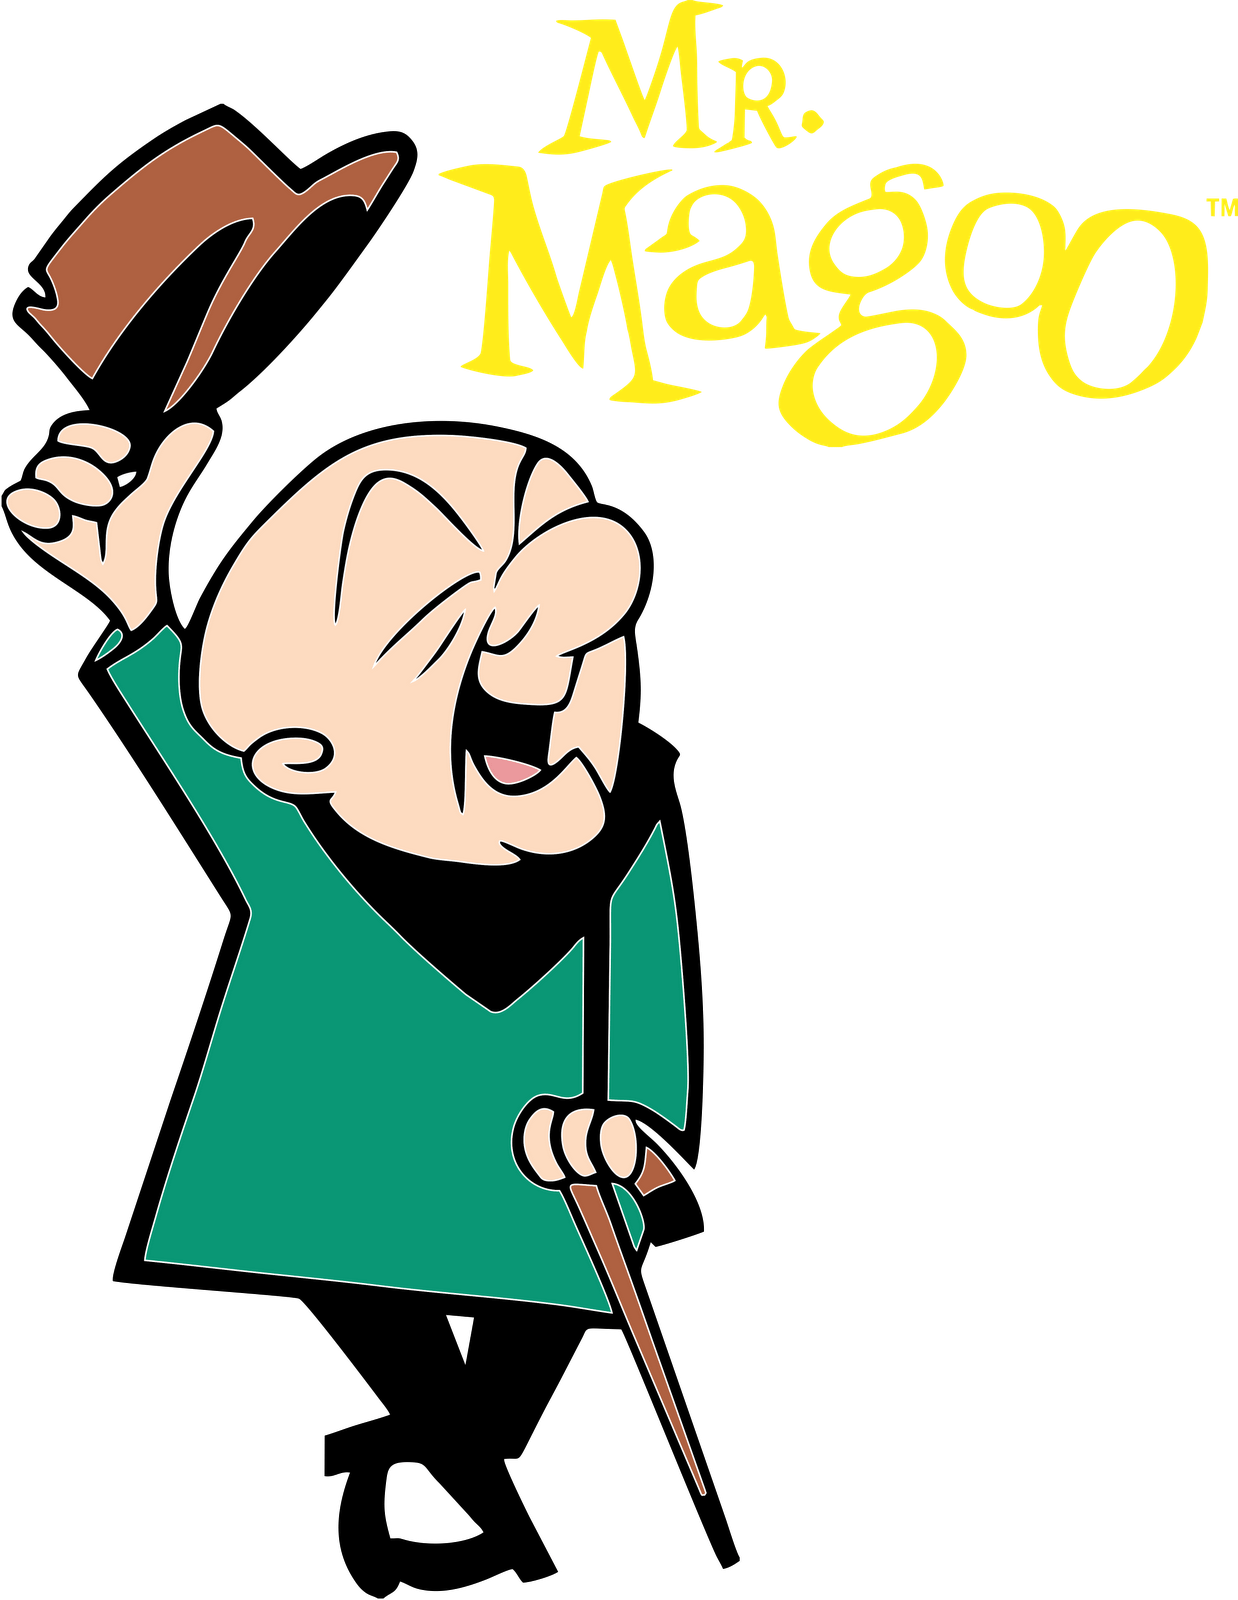 Lucas Magoon - Mr Magoo Cartoon (1238x1600)